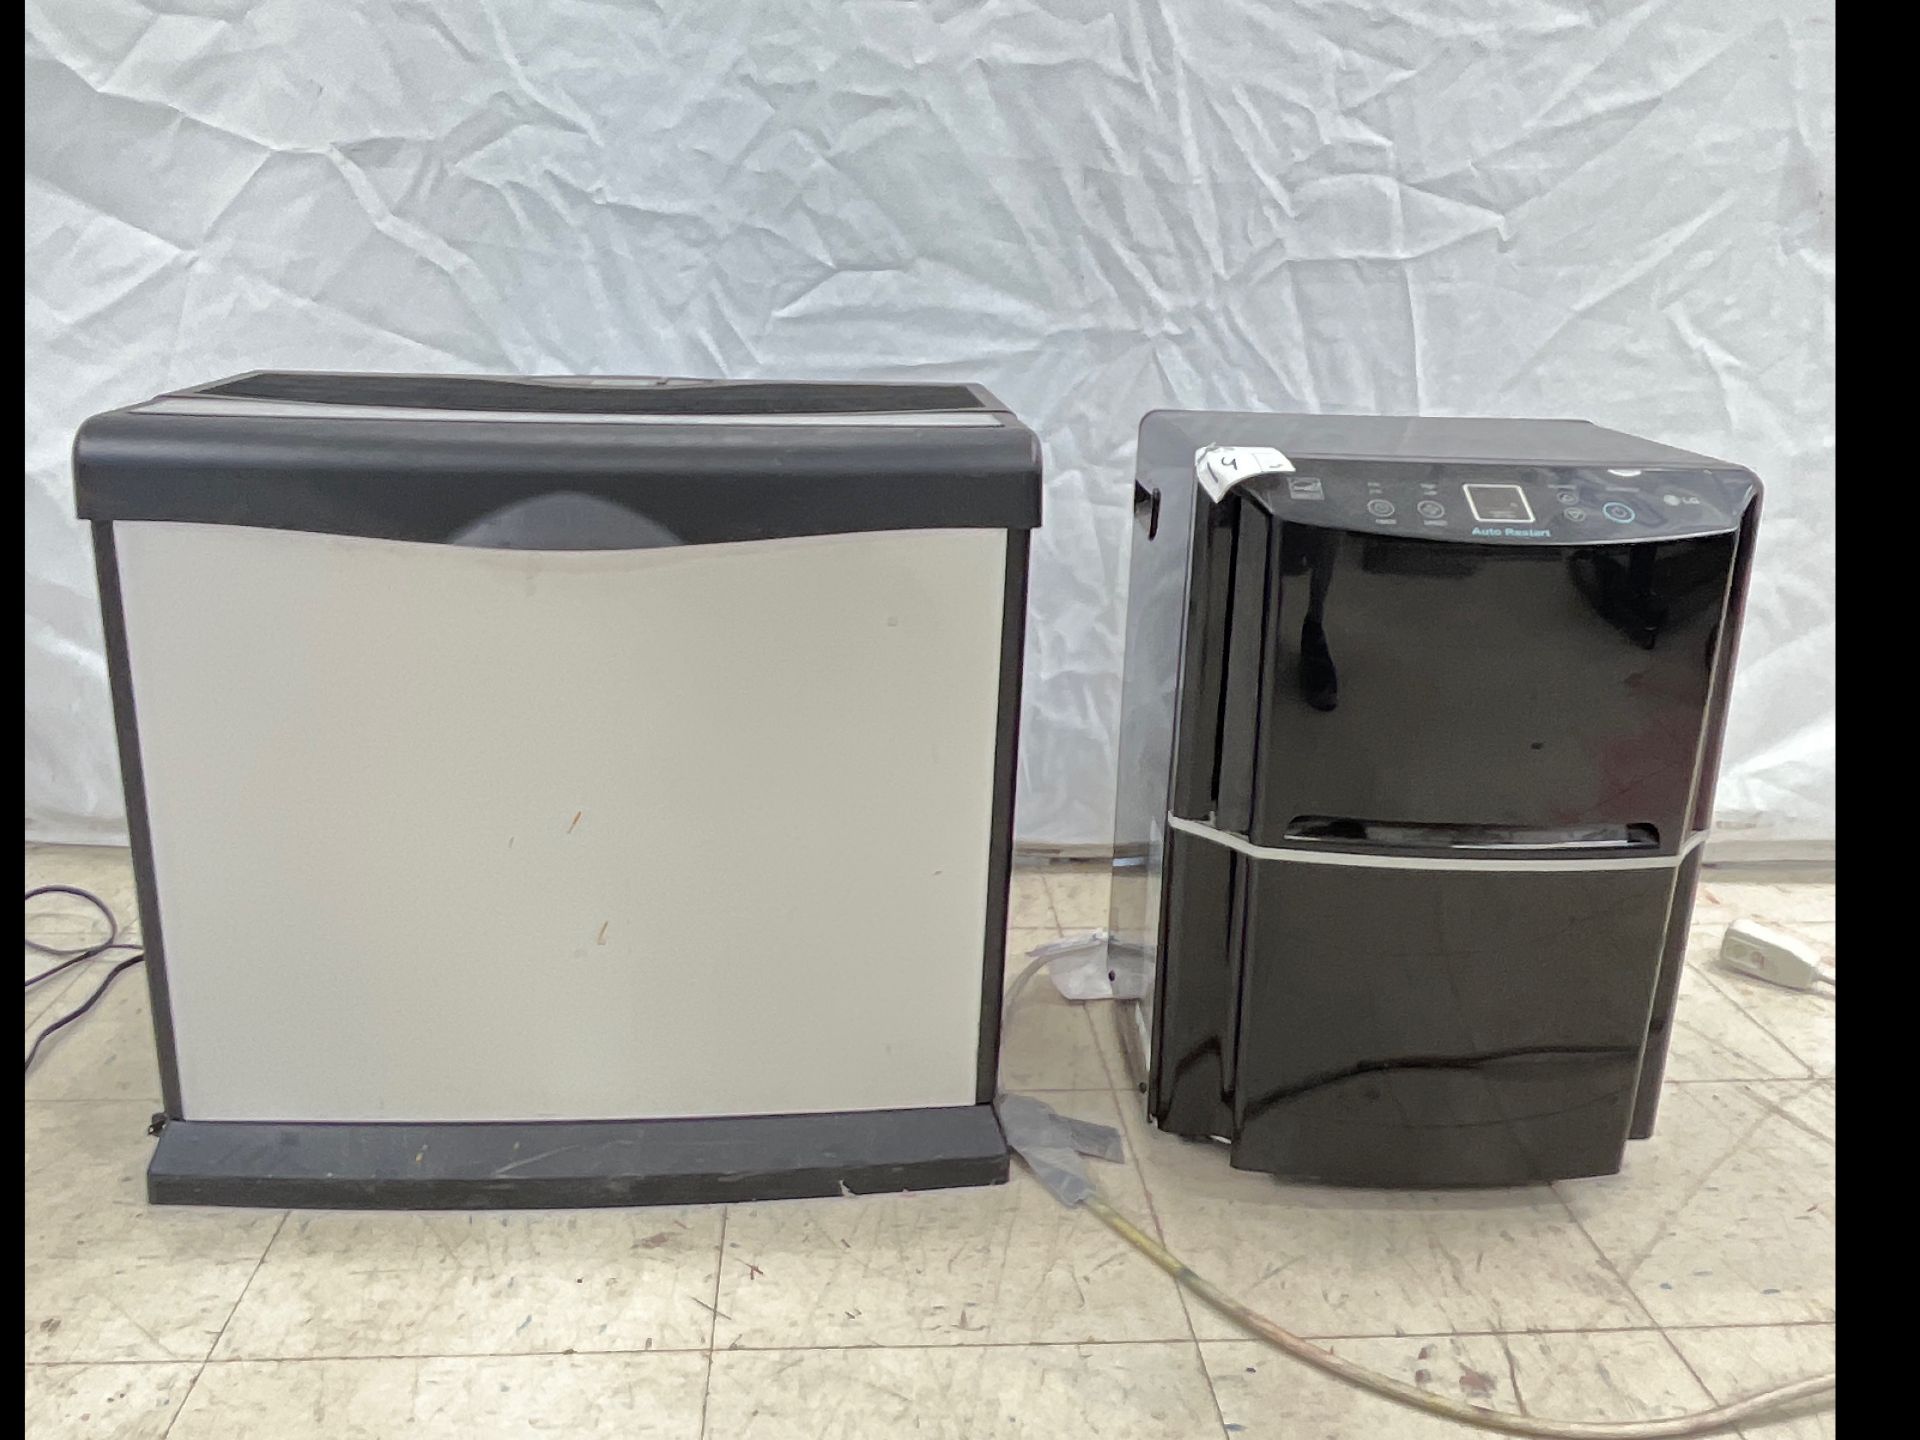 LG Dehumidifier / w/AirCare Humidifier